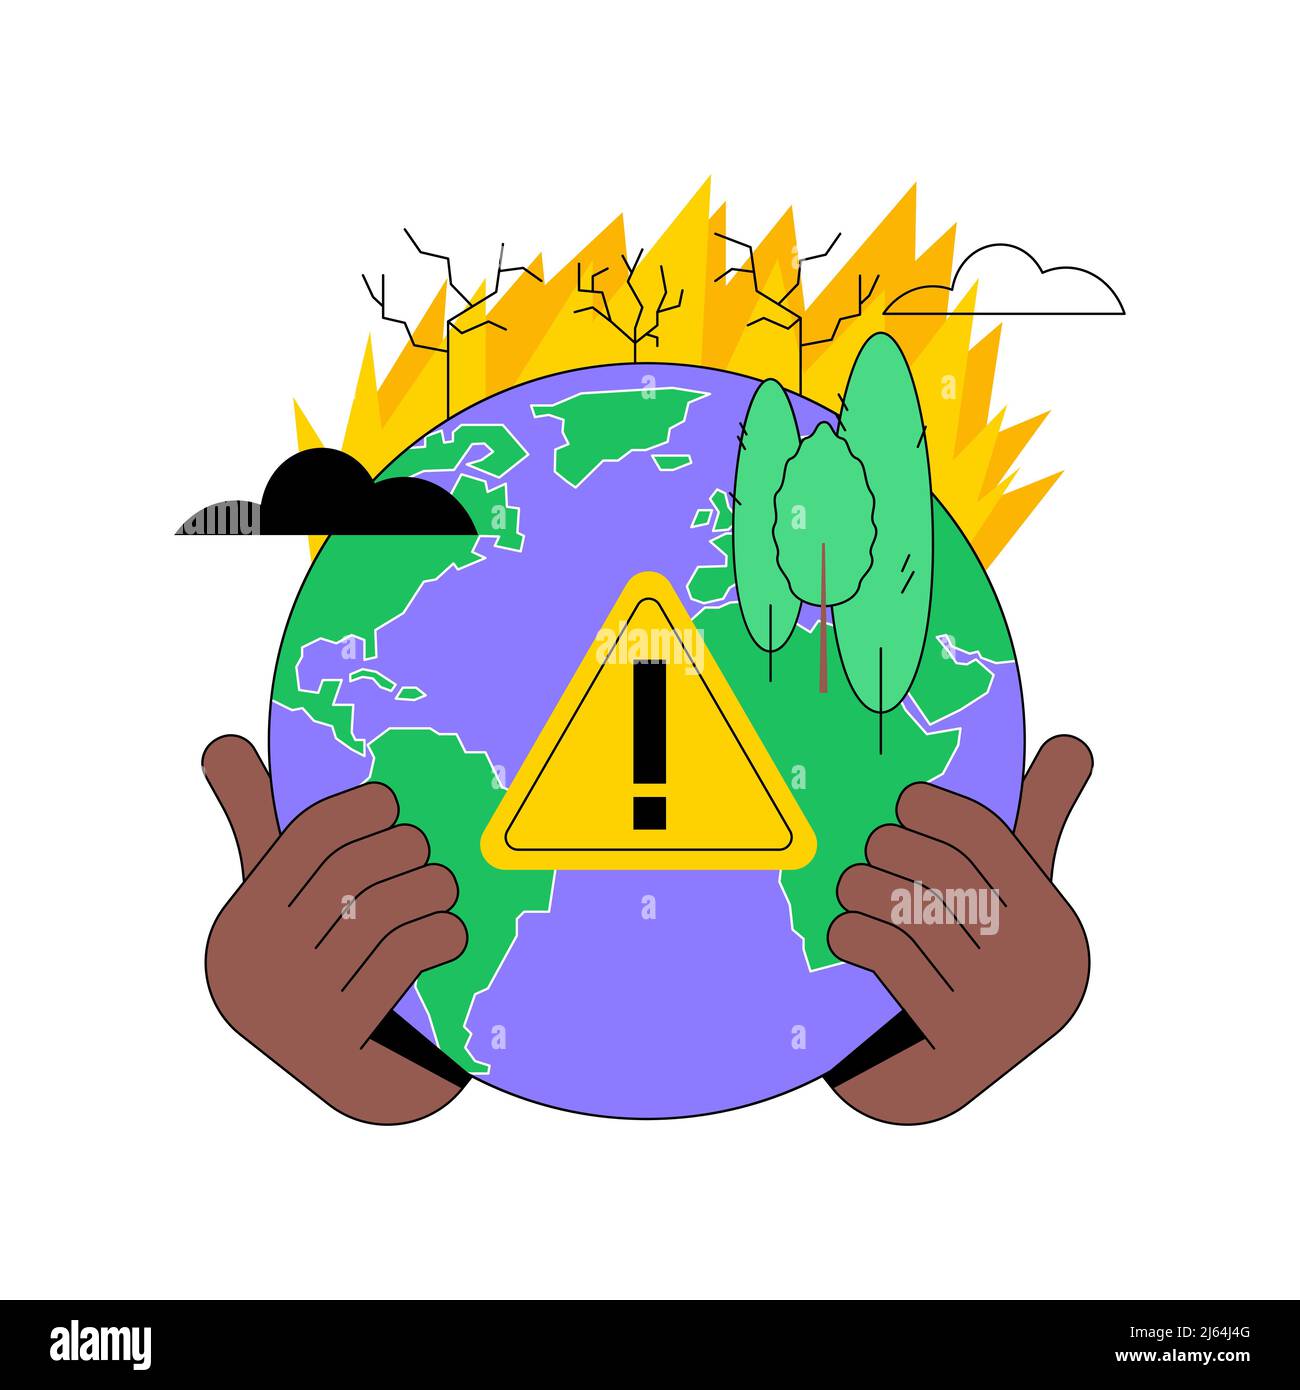 Wildfires abstrakte Konzept Vektor-Illustration. Waldbrände, Brandbekämpfung, Waldbrände verursachen, Verlust von Wildtieren, Folgen der globalen Erwärmung, Naturkatastrophe, abstrakte Metapher für heiße Temperaturen. Stock Vektor